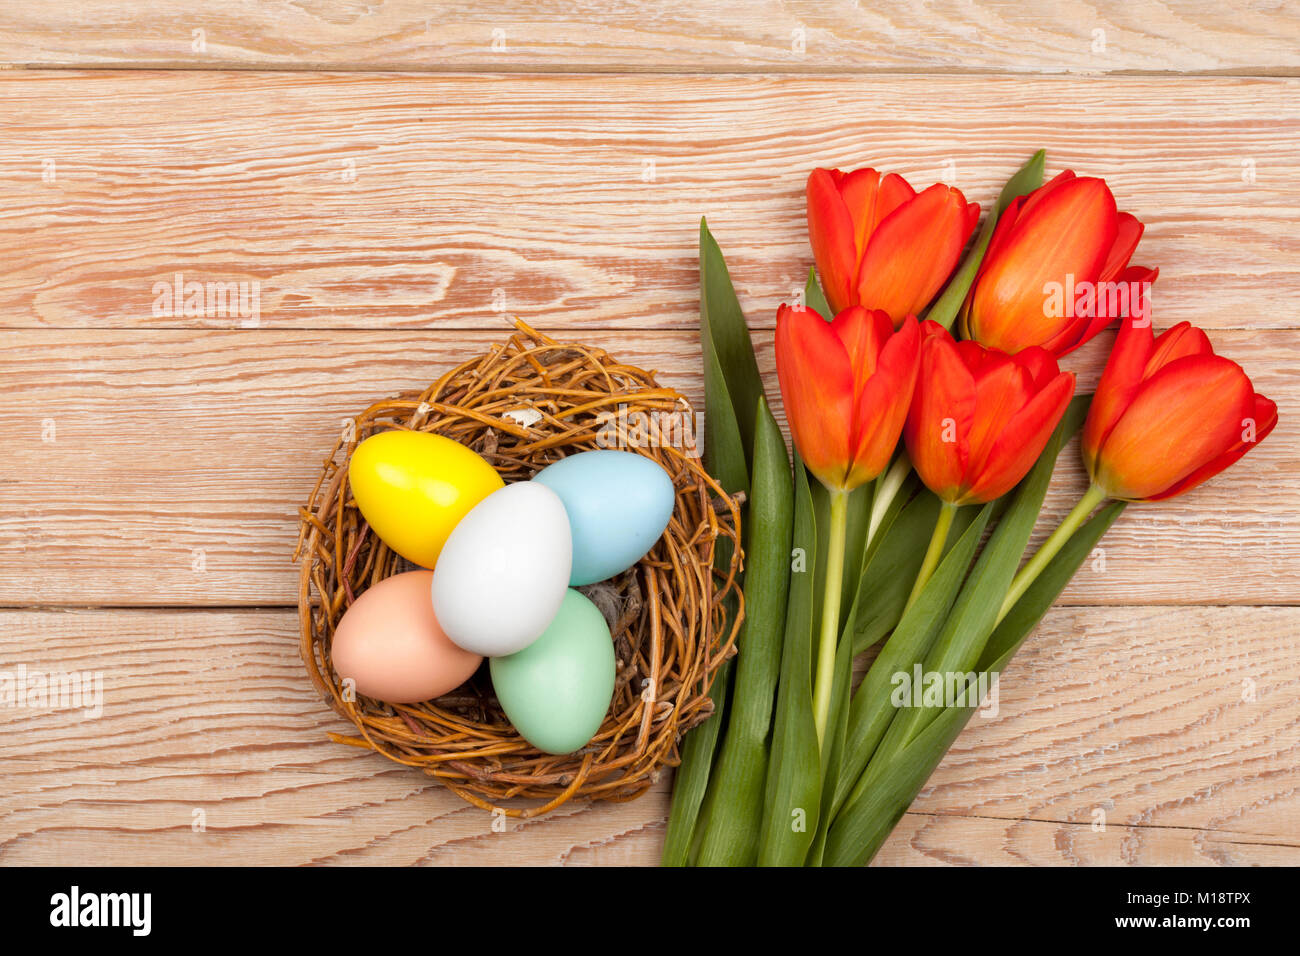 Los huevos de Pascua en un cuadro con coloridos tulipanes rojos y Pink Ribbon Foto de stock